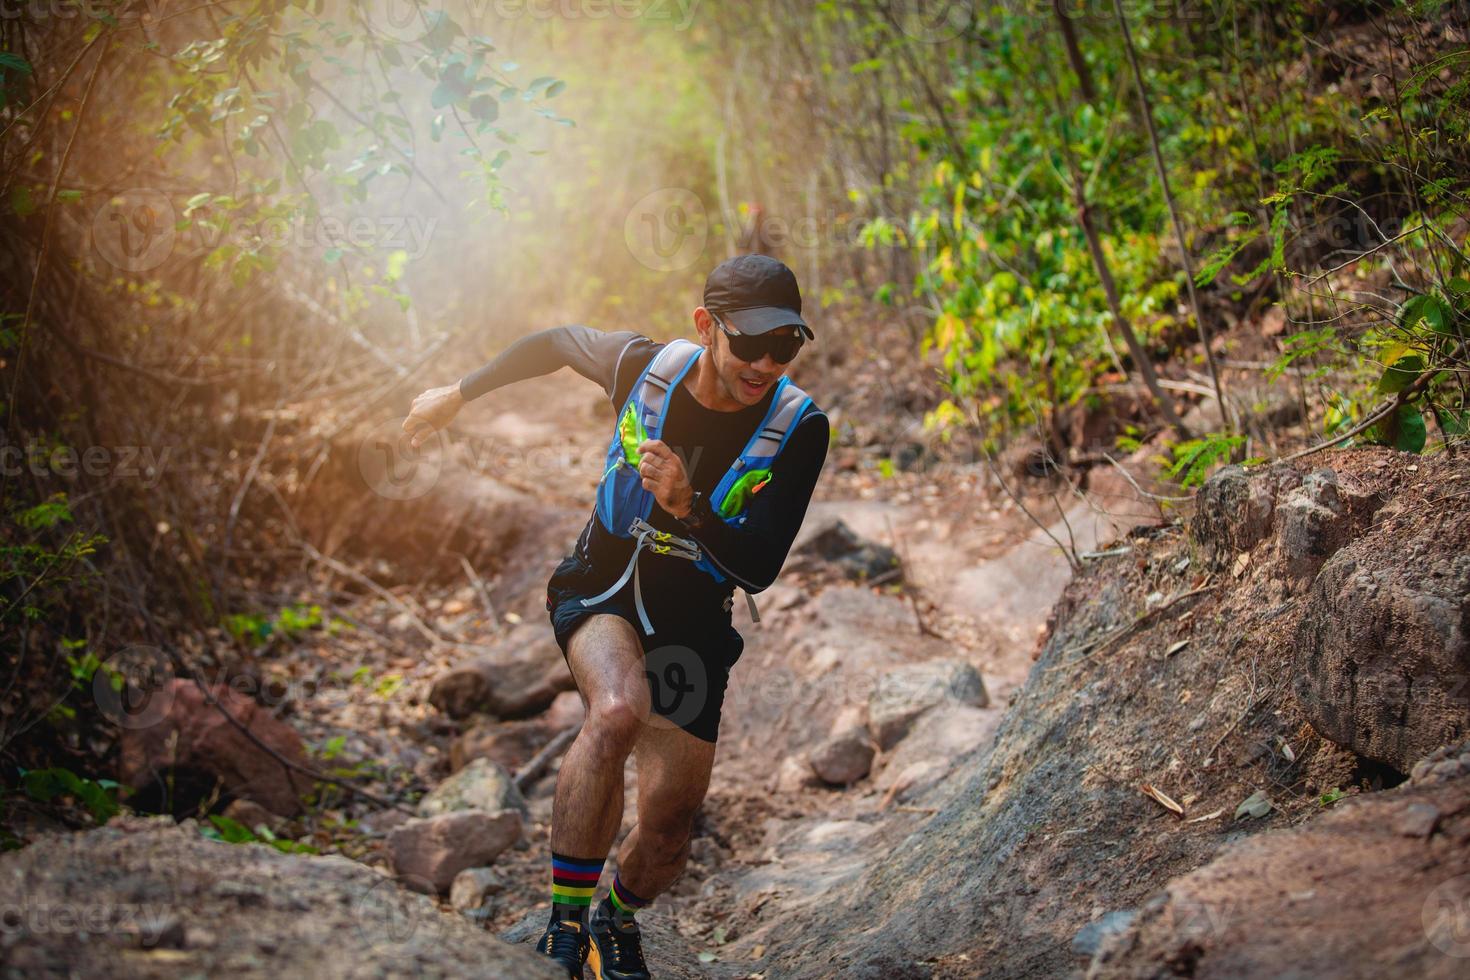 um homem corredor de trilha. e pés de atleta usando sapatos esportivos para trilha na floresta foto